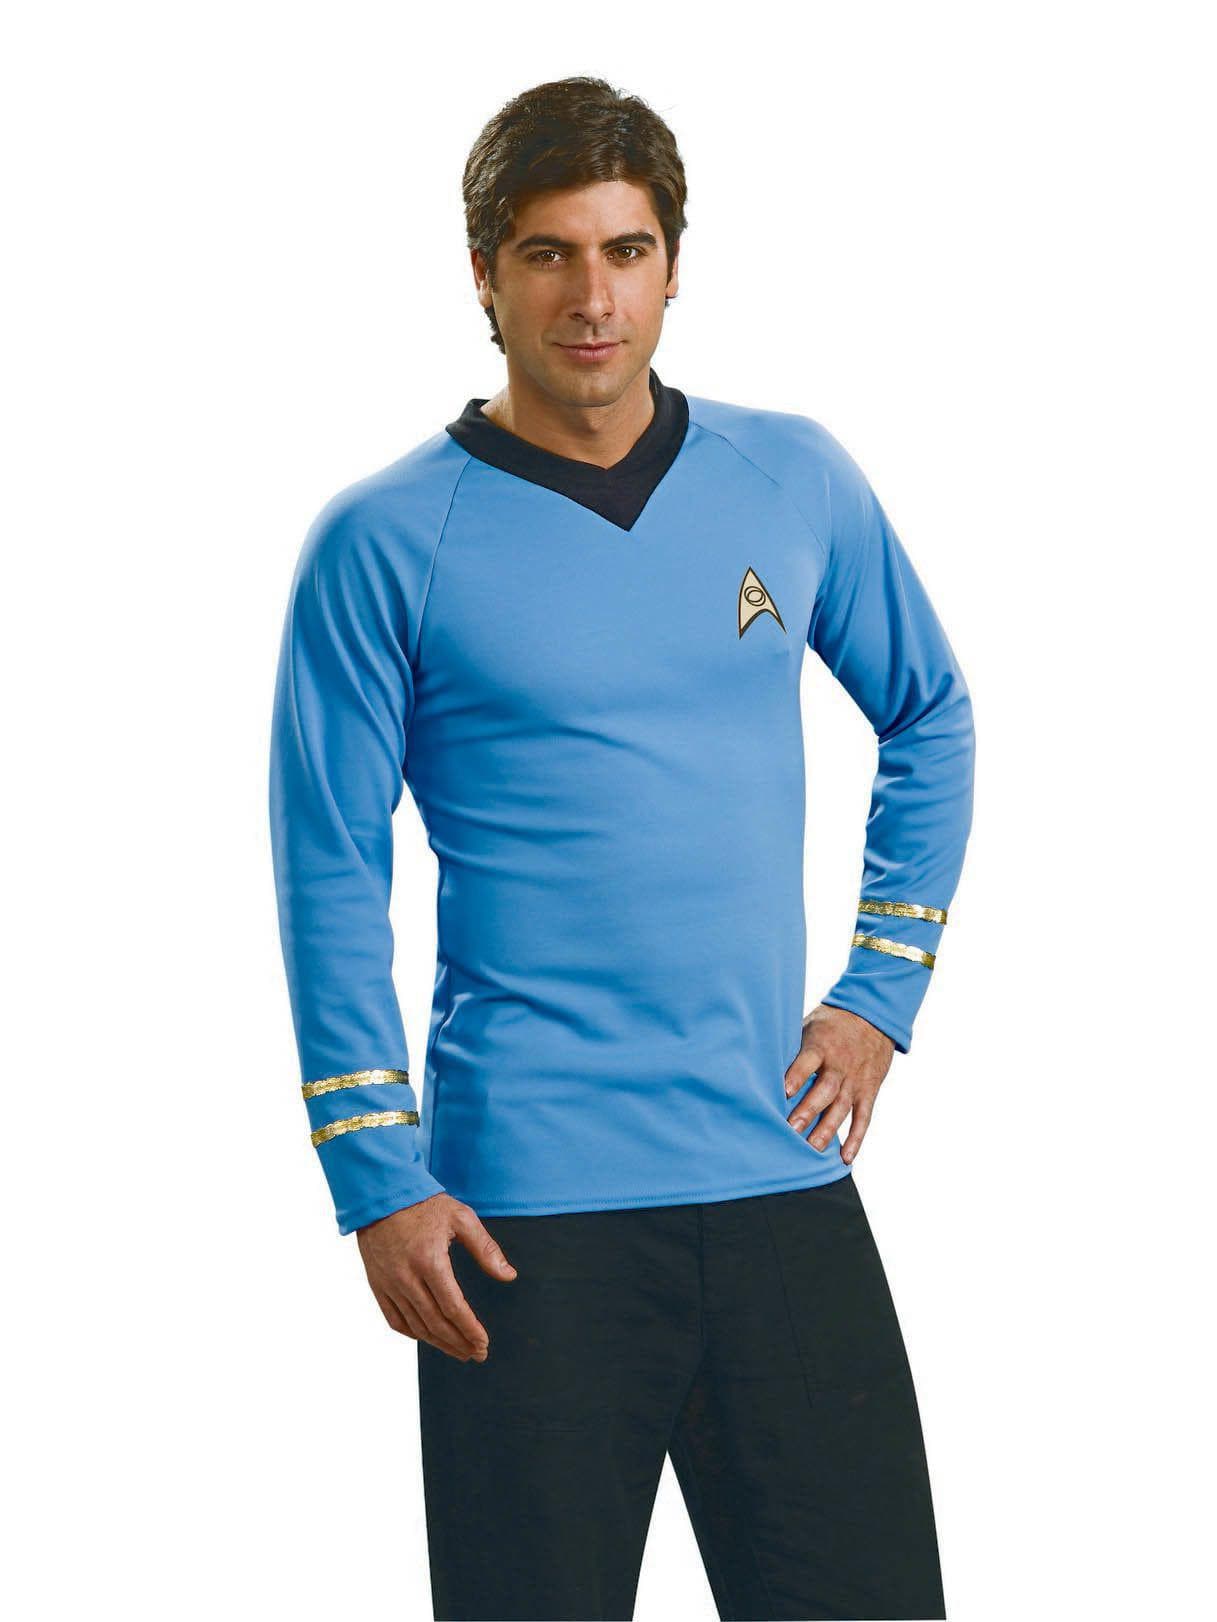 Men's Star Trek Spock Shirt - Deluxe - costumes.com